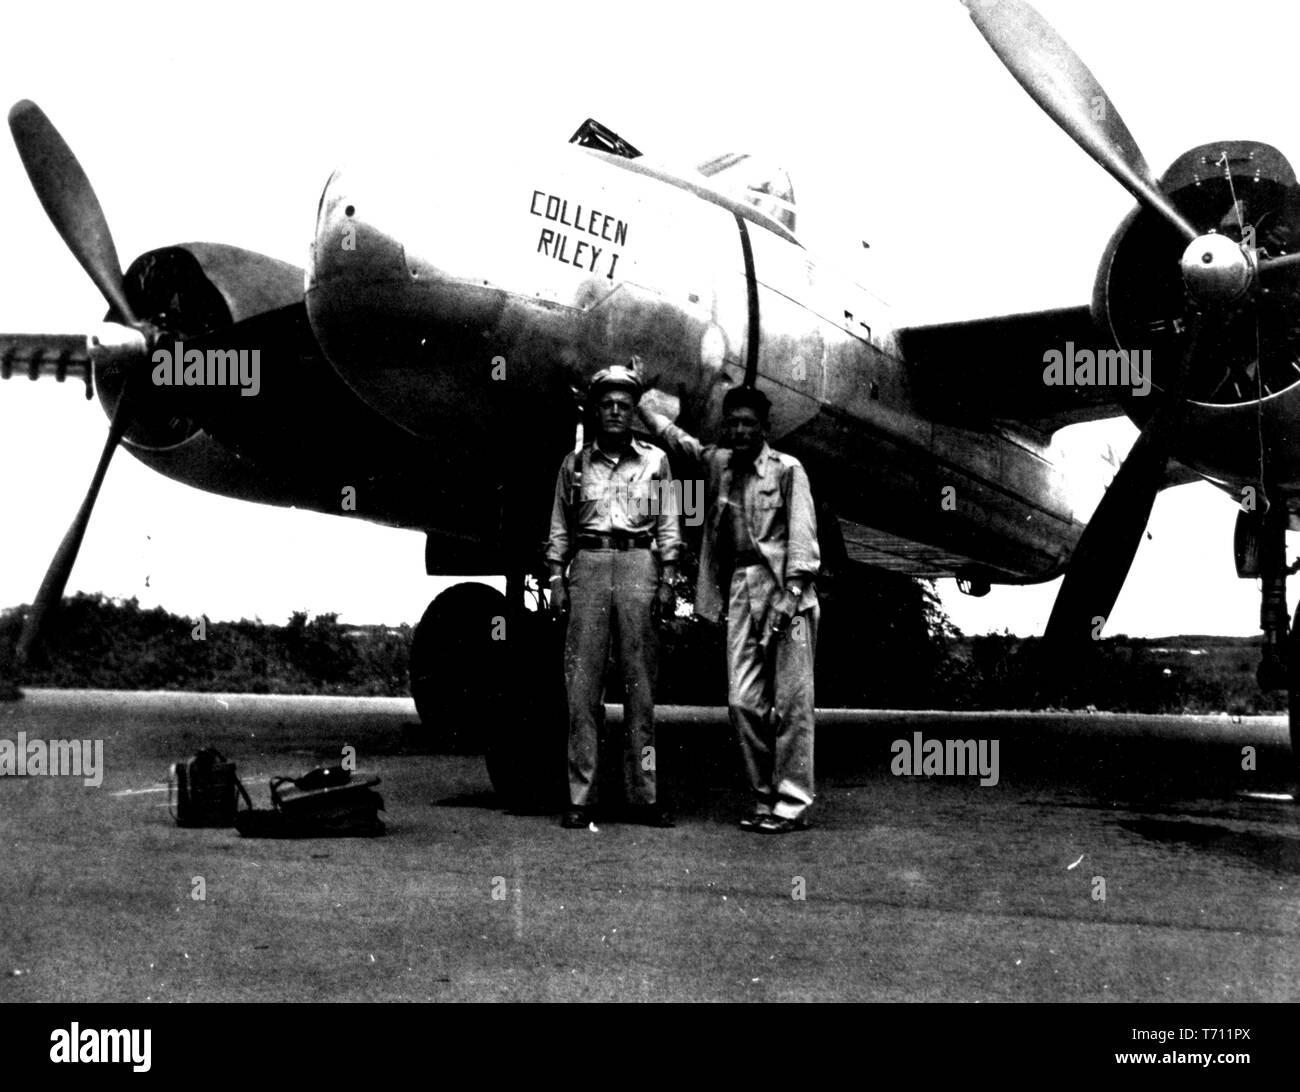 Fotografia di Donald Kent 'Deke' Slayton e 1Lt. Ed Steinman nella parte anteriore del Douglas A-26 bombardiere a Okinawa, 1945. Immagine cortesia Nazionale Aeronautica e Spaziale Administration (NASA). () Foto Stock